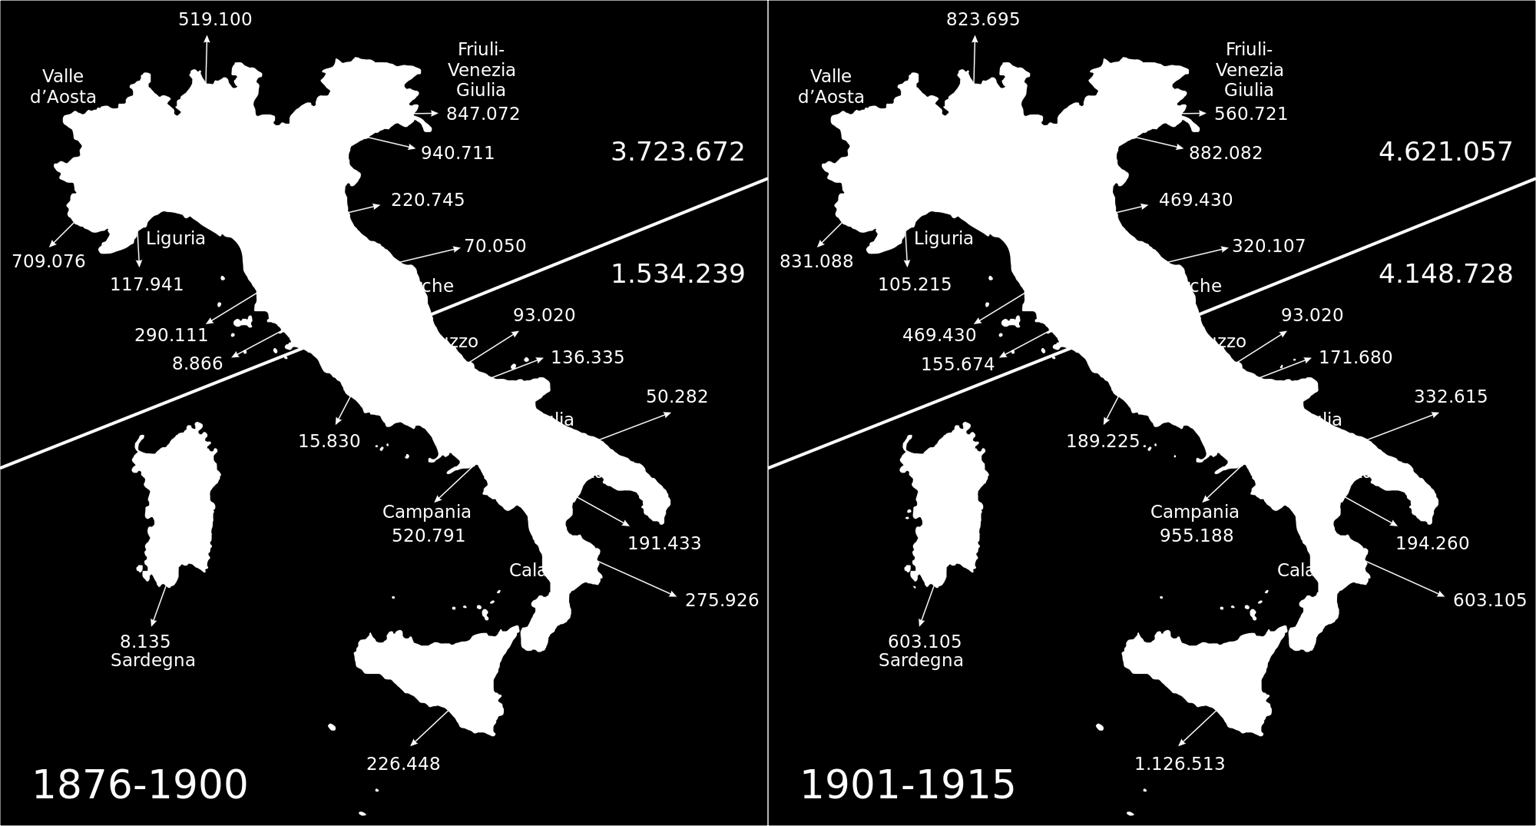 Tra il 1860-1885 dall'italia partirono circa 15 milioni di emigrati, che partirono dai porti